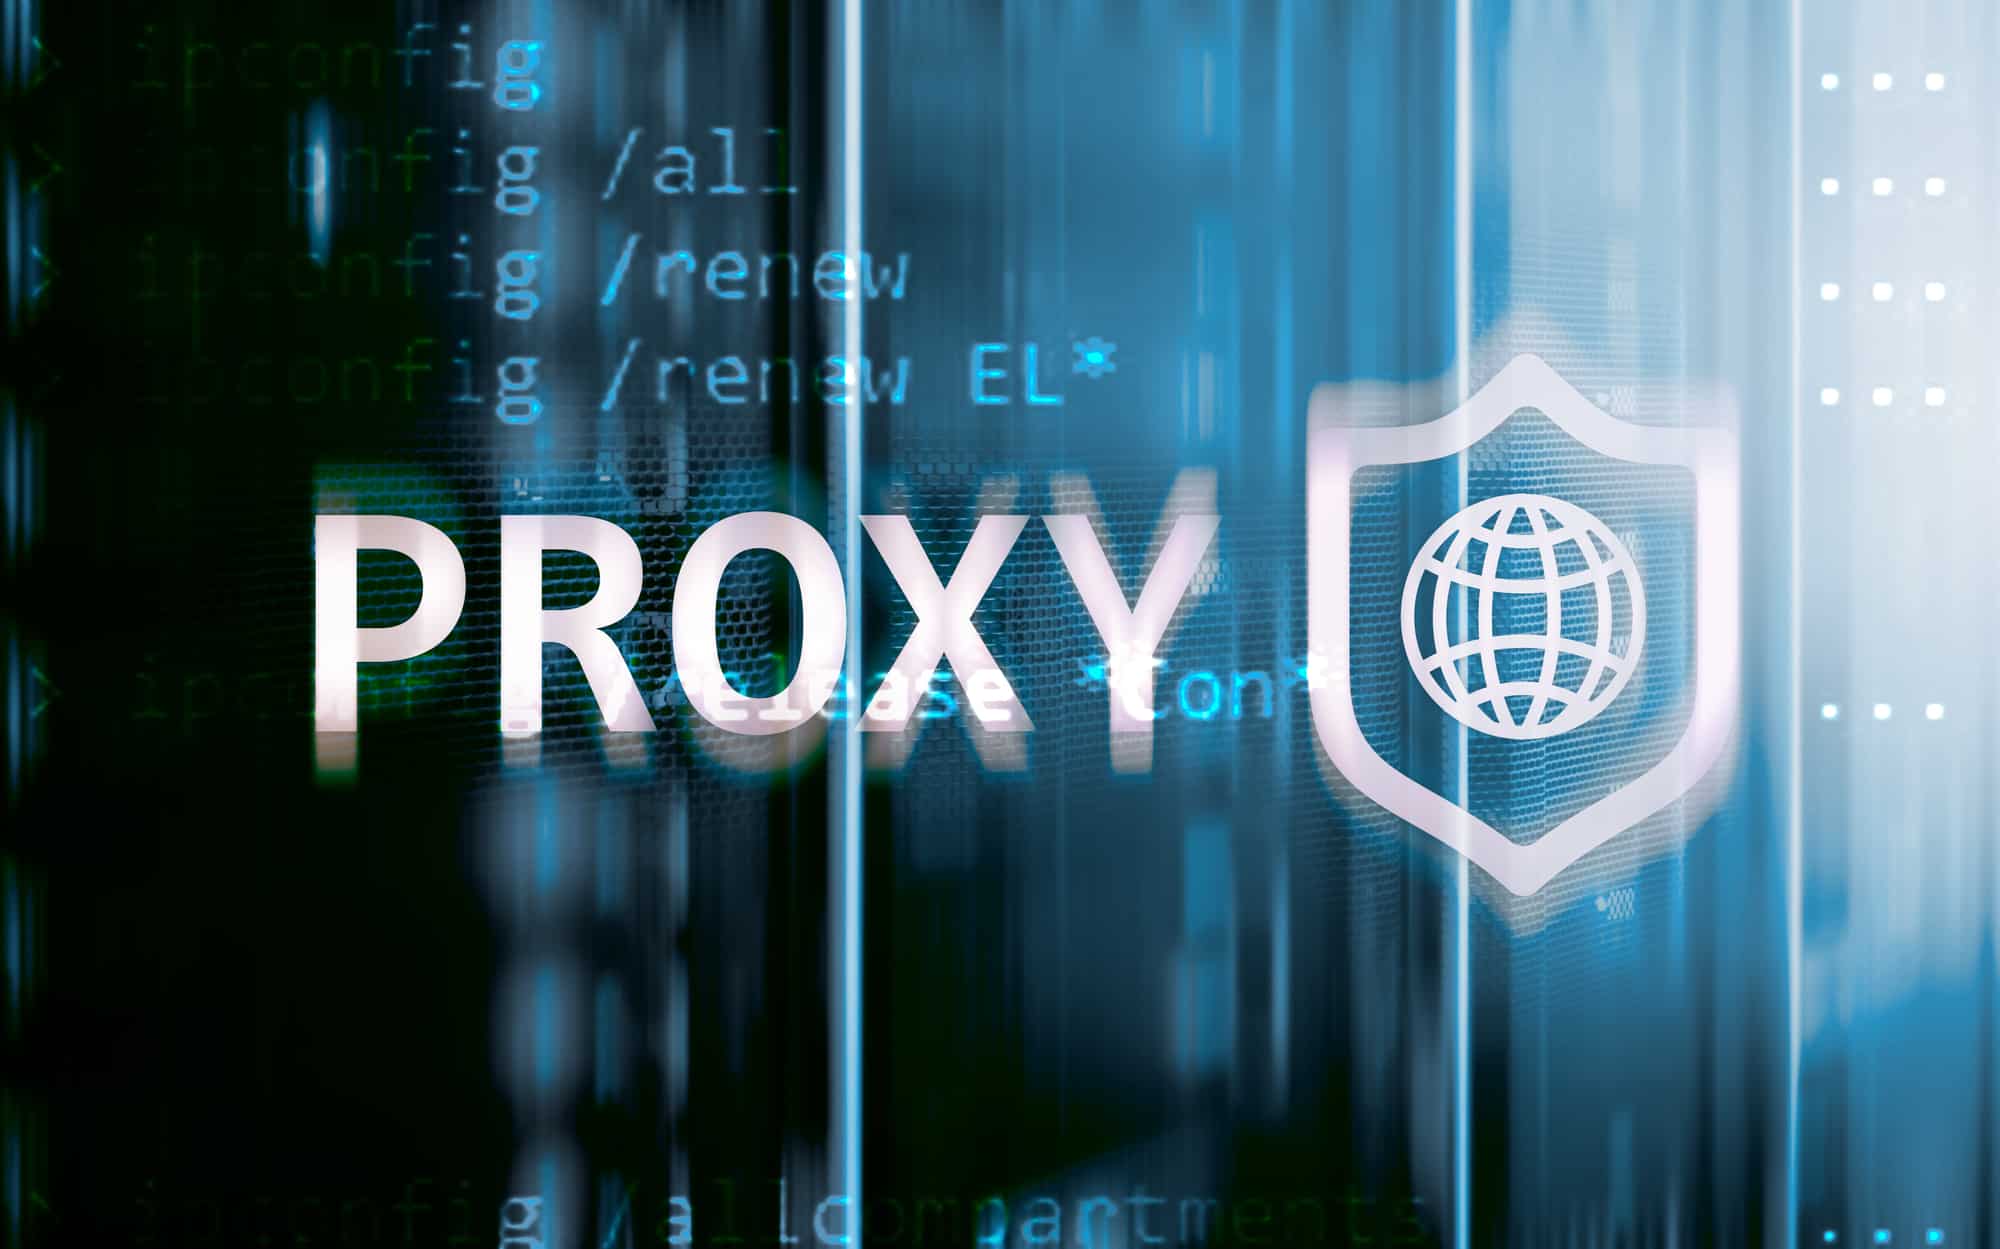 Proxy mana yang digunakan untuk chrome dan browser lainnya